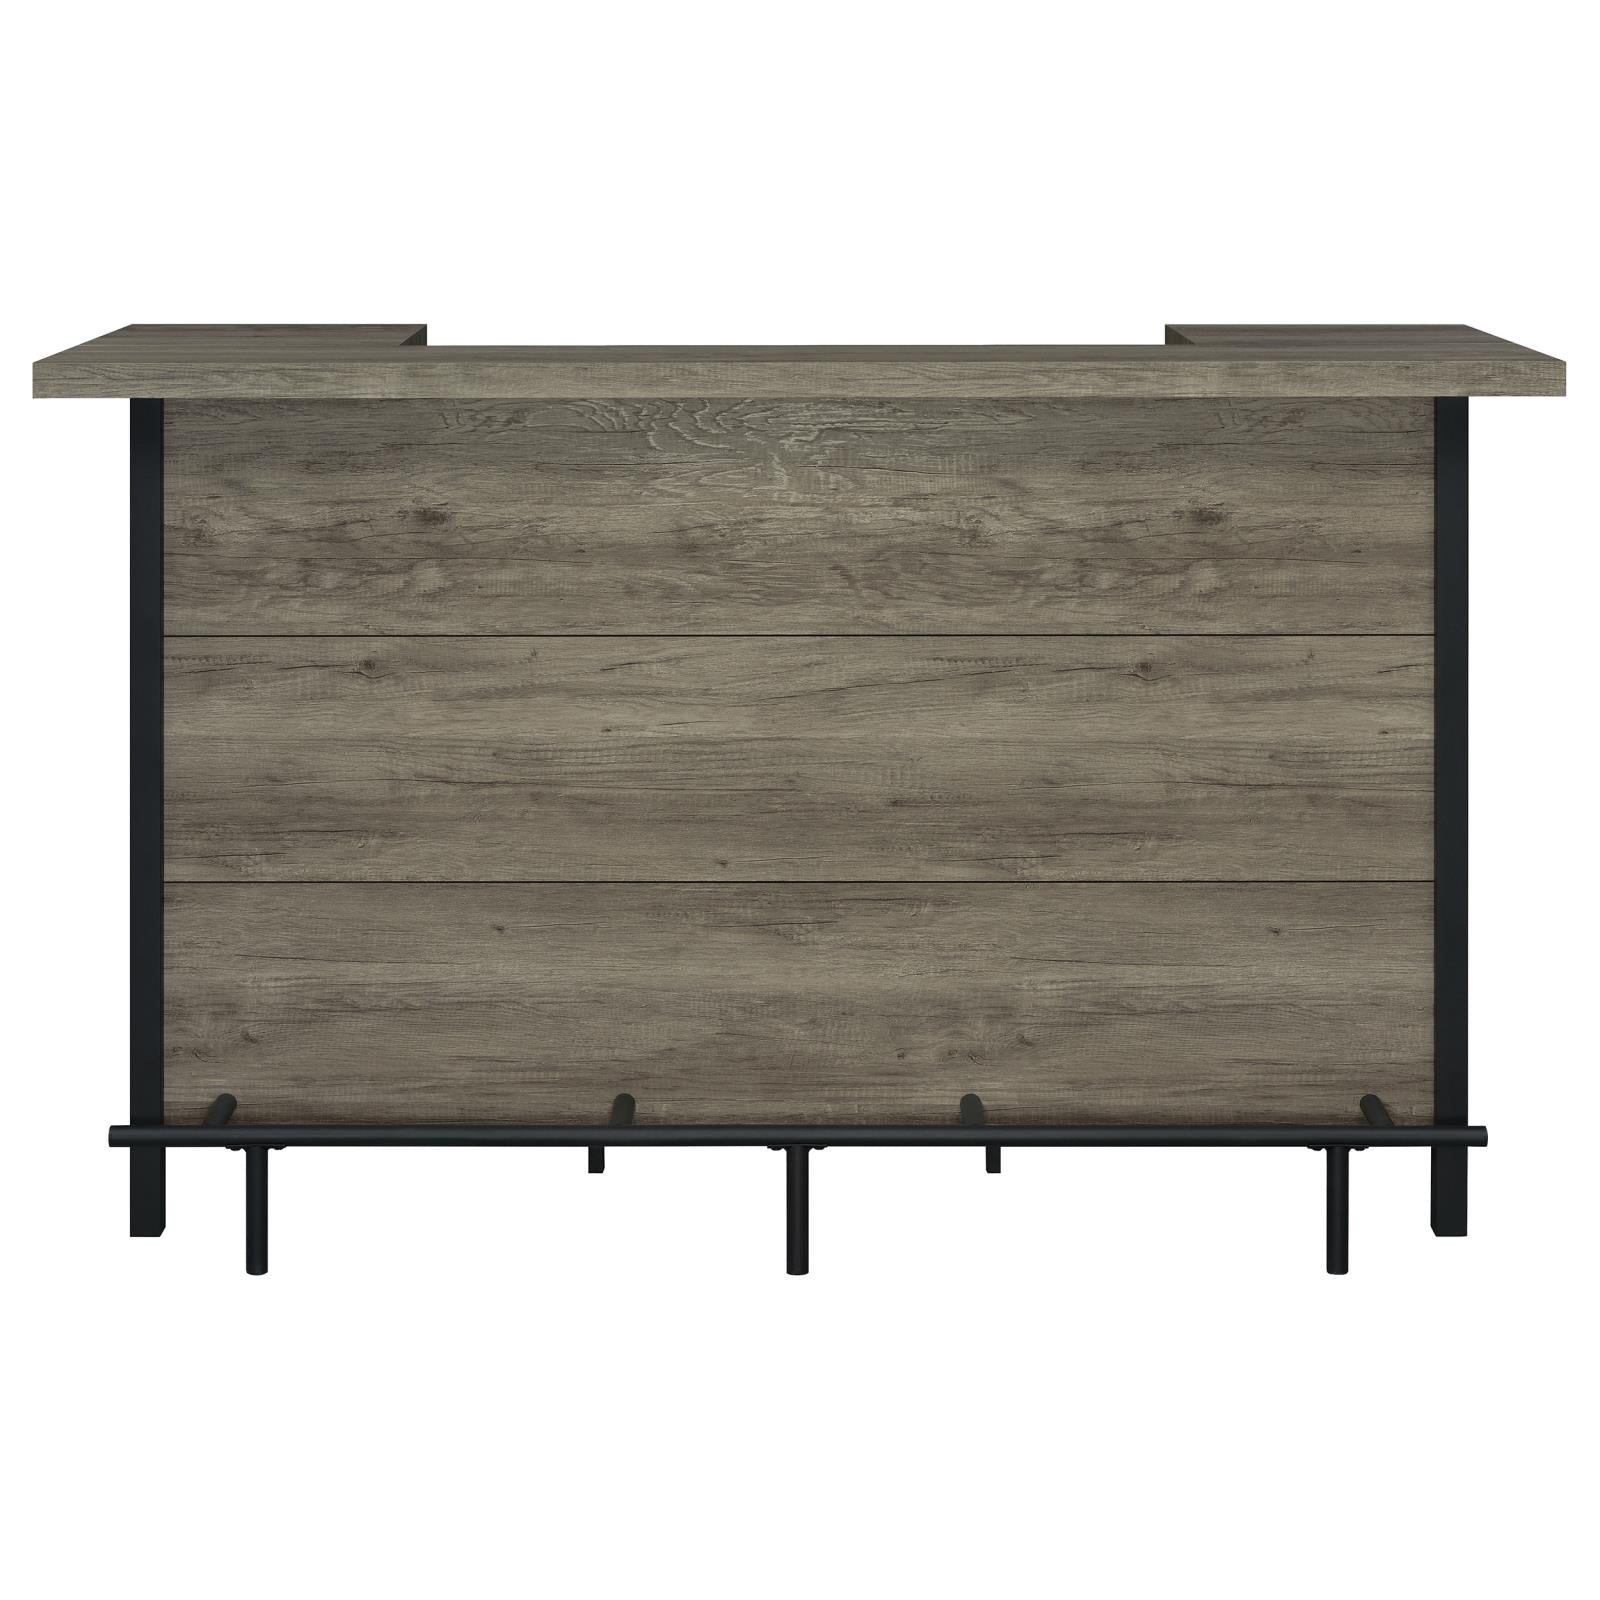 Bellemore Gray Driftwood/Black Bar Unit with Footrest - 182105 - Bien Home Furniture &amp; Electronics